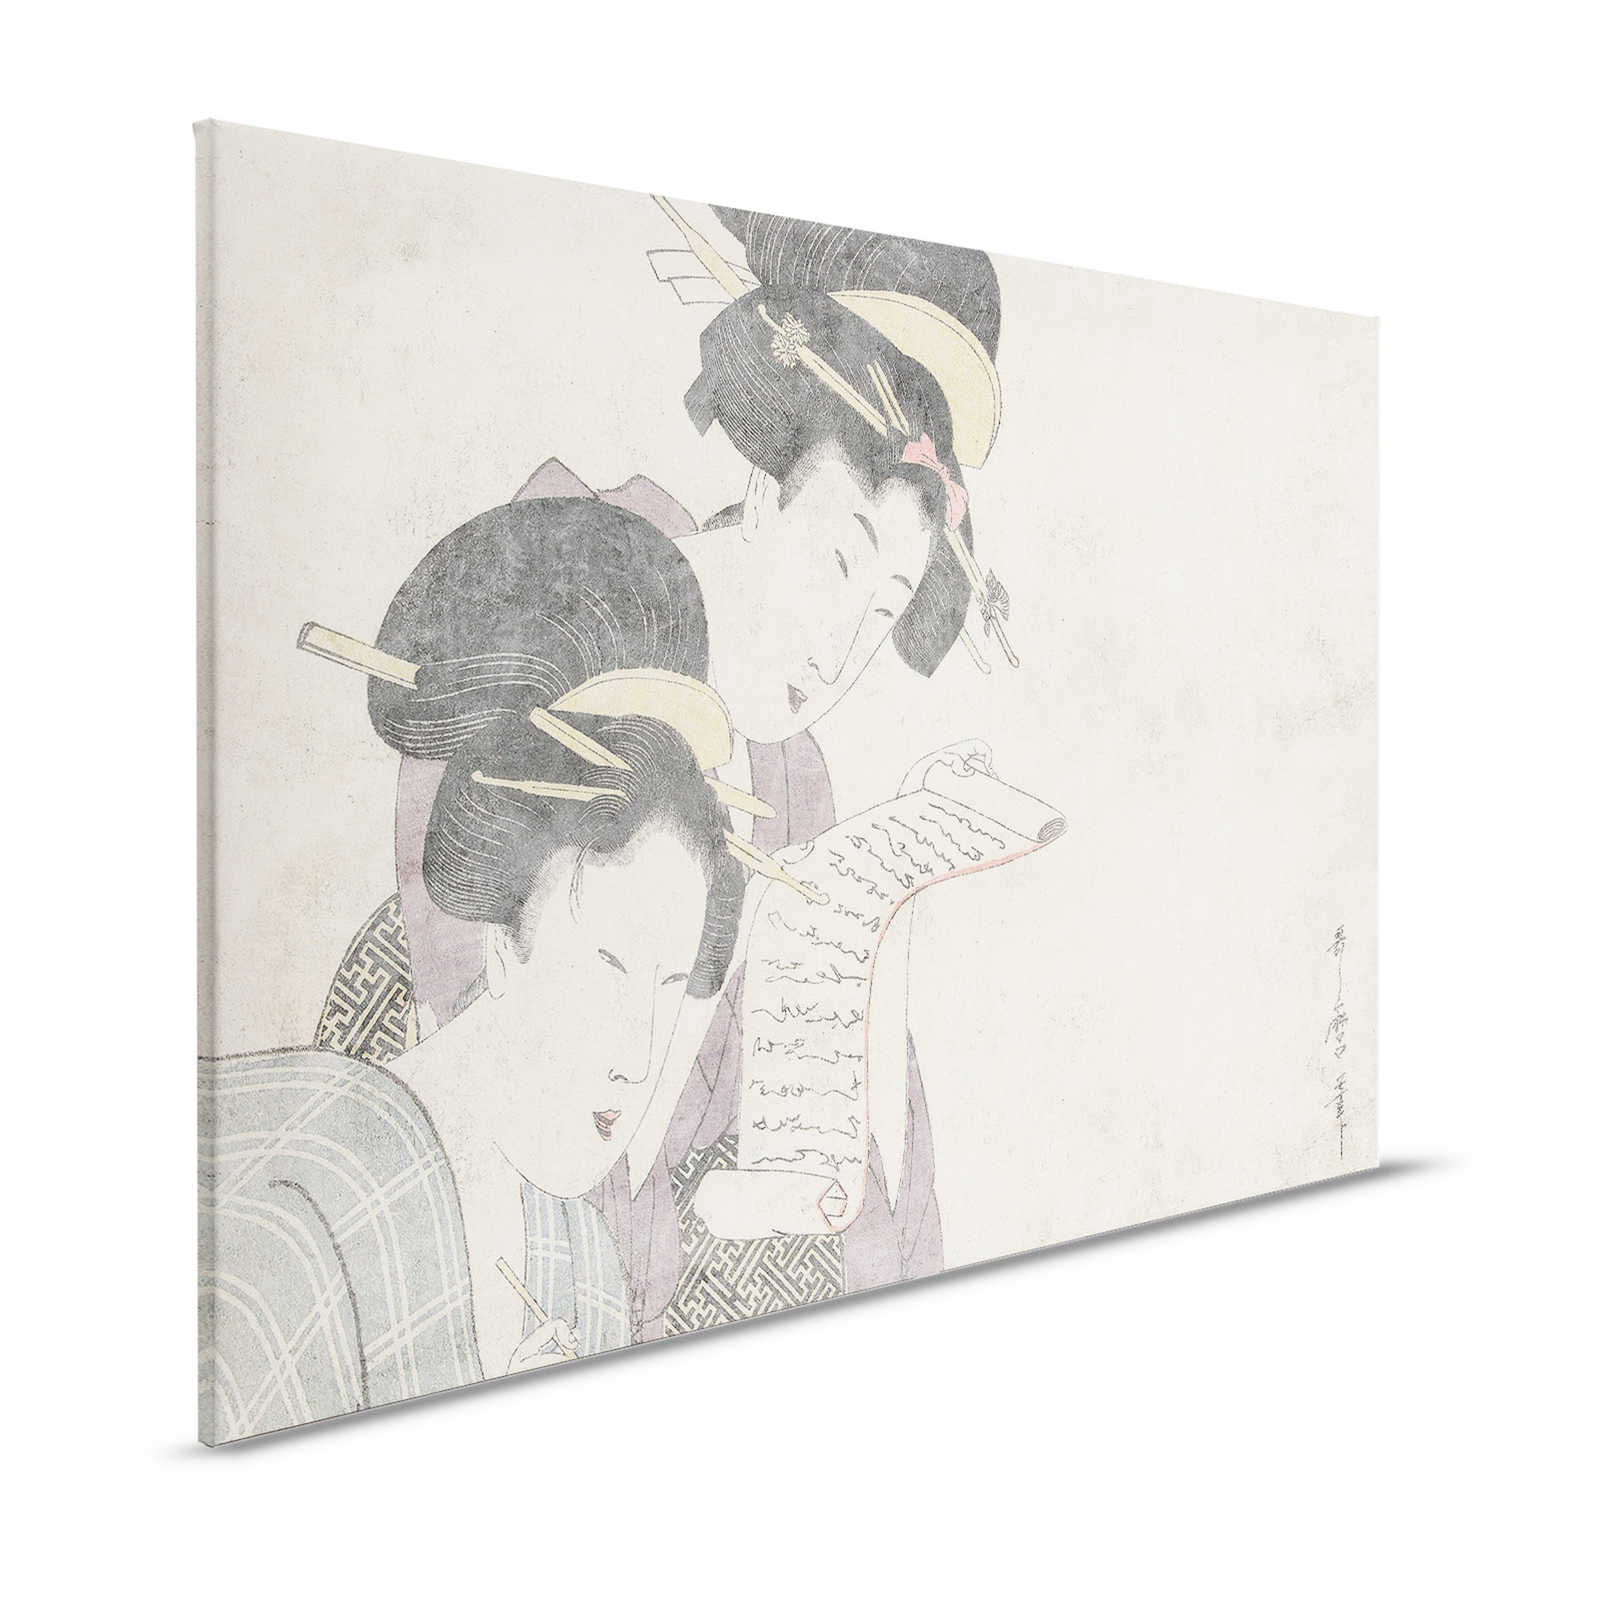 Osaka 3 - Aziatisch Canvas Schilderij Vintage Tekening & Gipsstructuur - 1.20 m x 0.80 m
